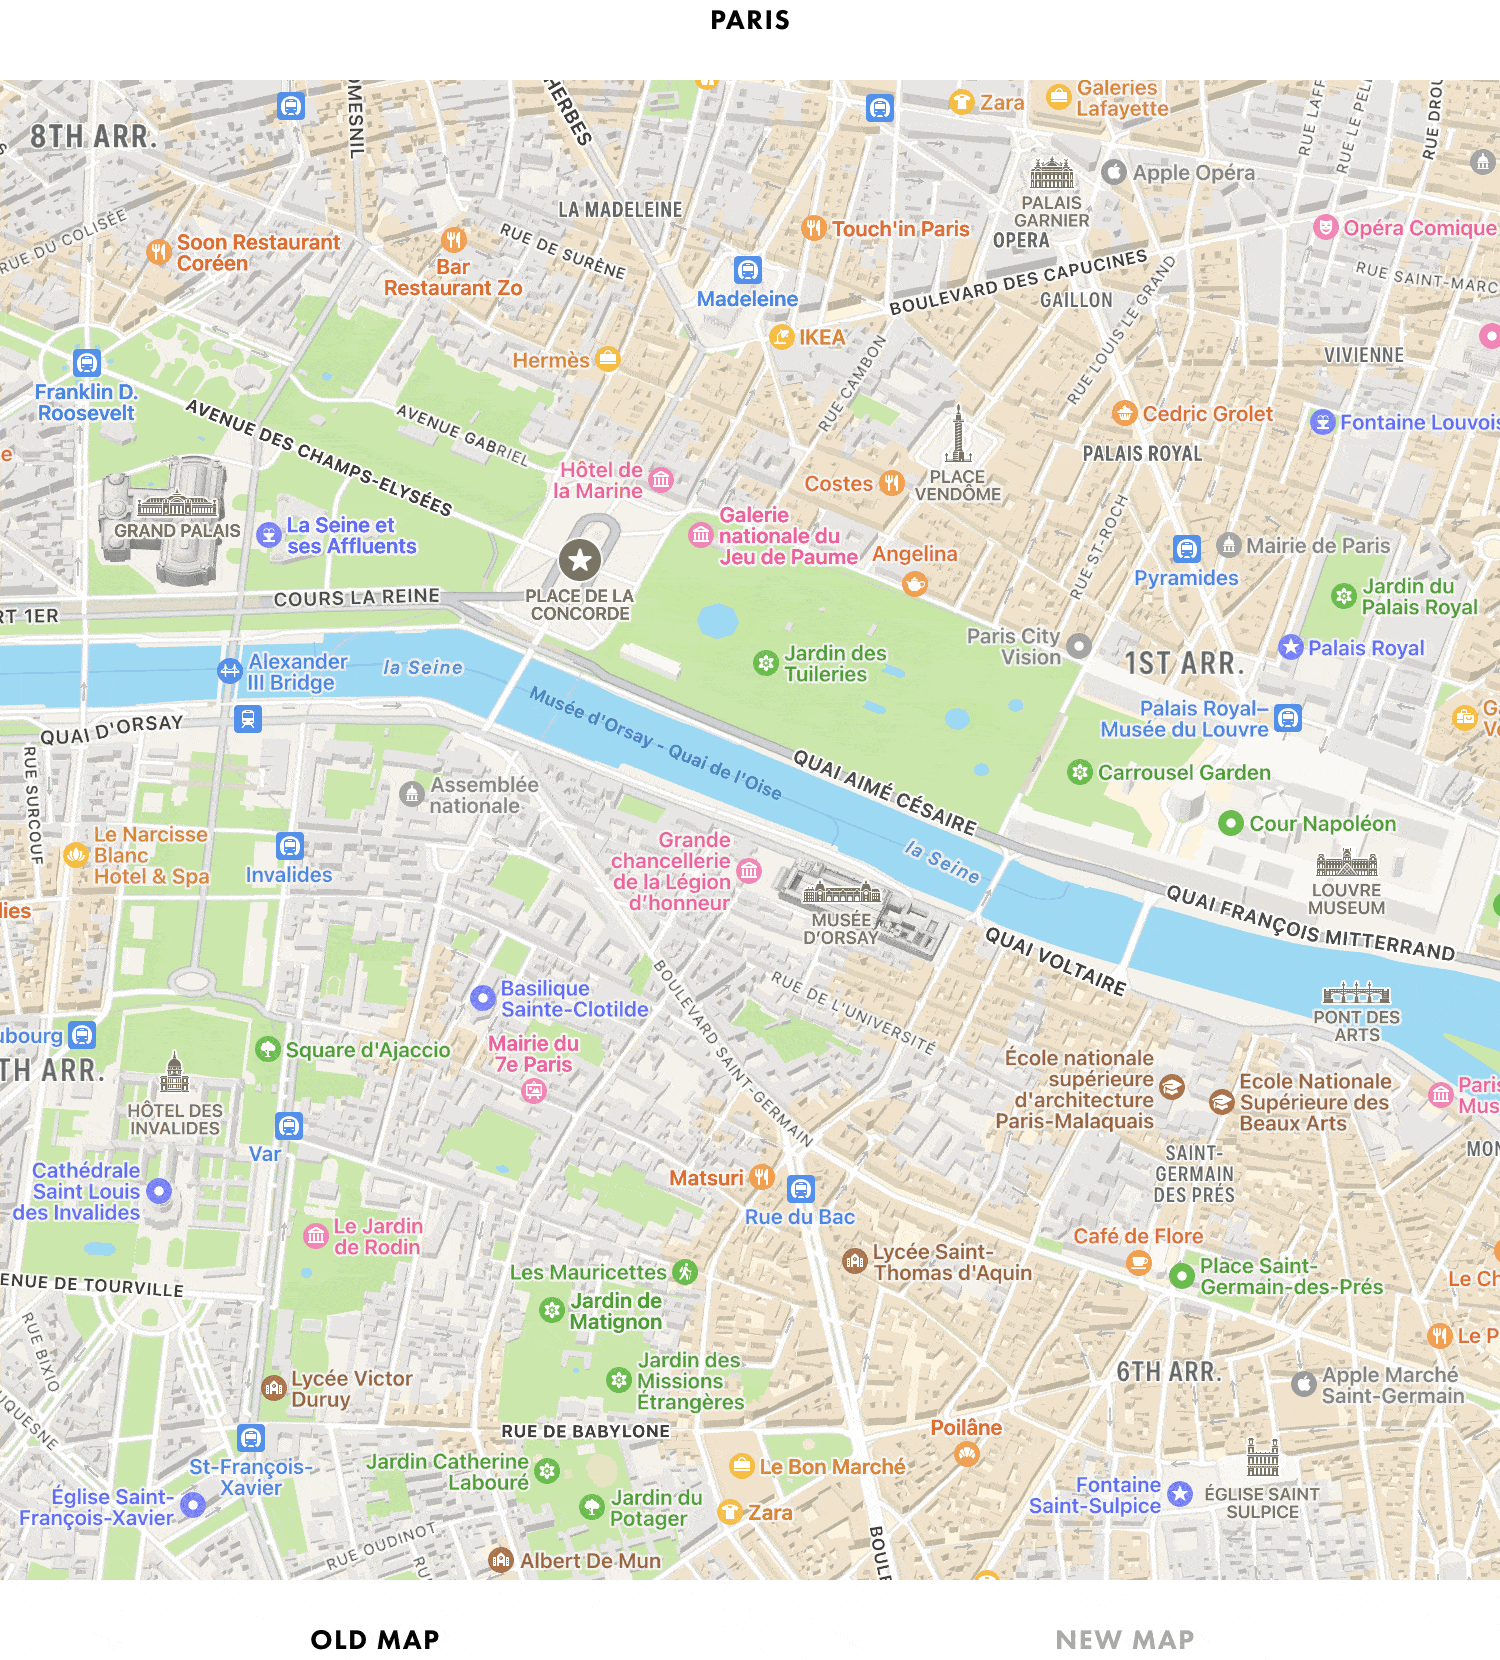 Mapas da Apple em 3D em Paris